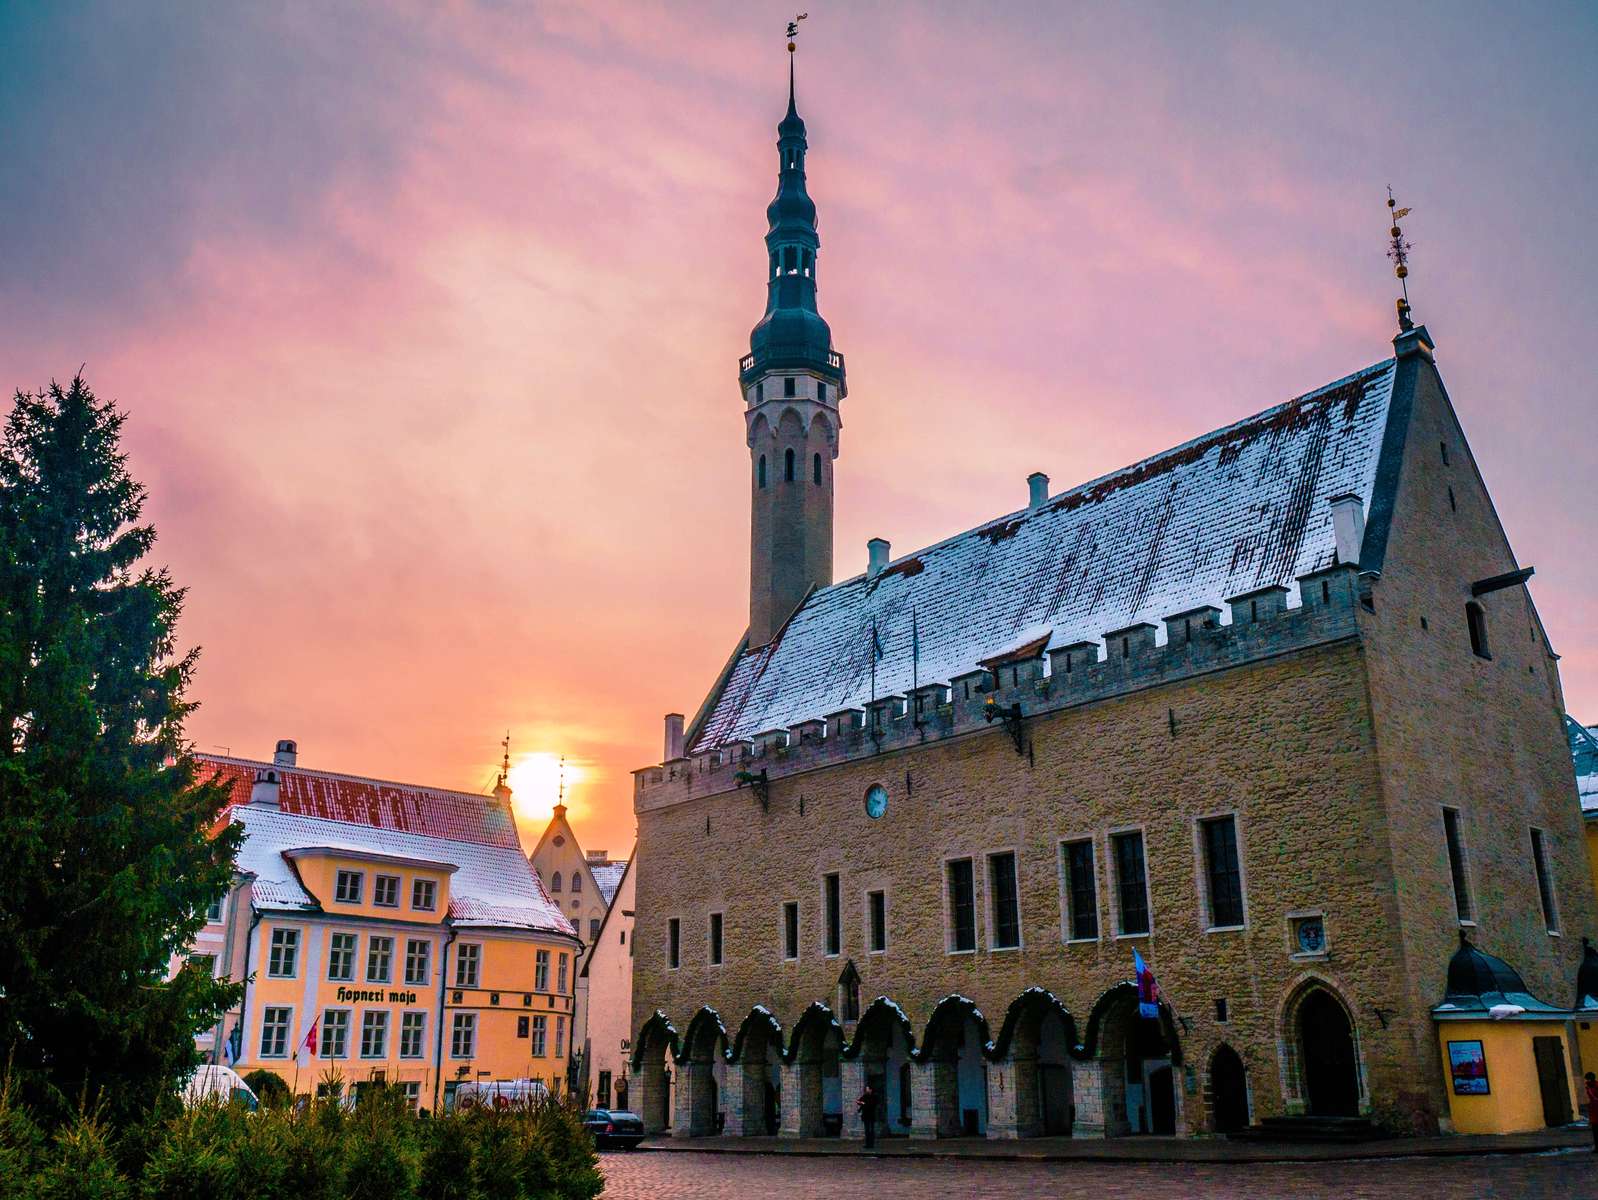 Tallinns medeltida rådhus, Estland pussel på nätet